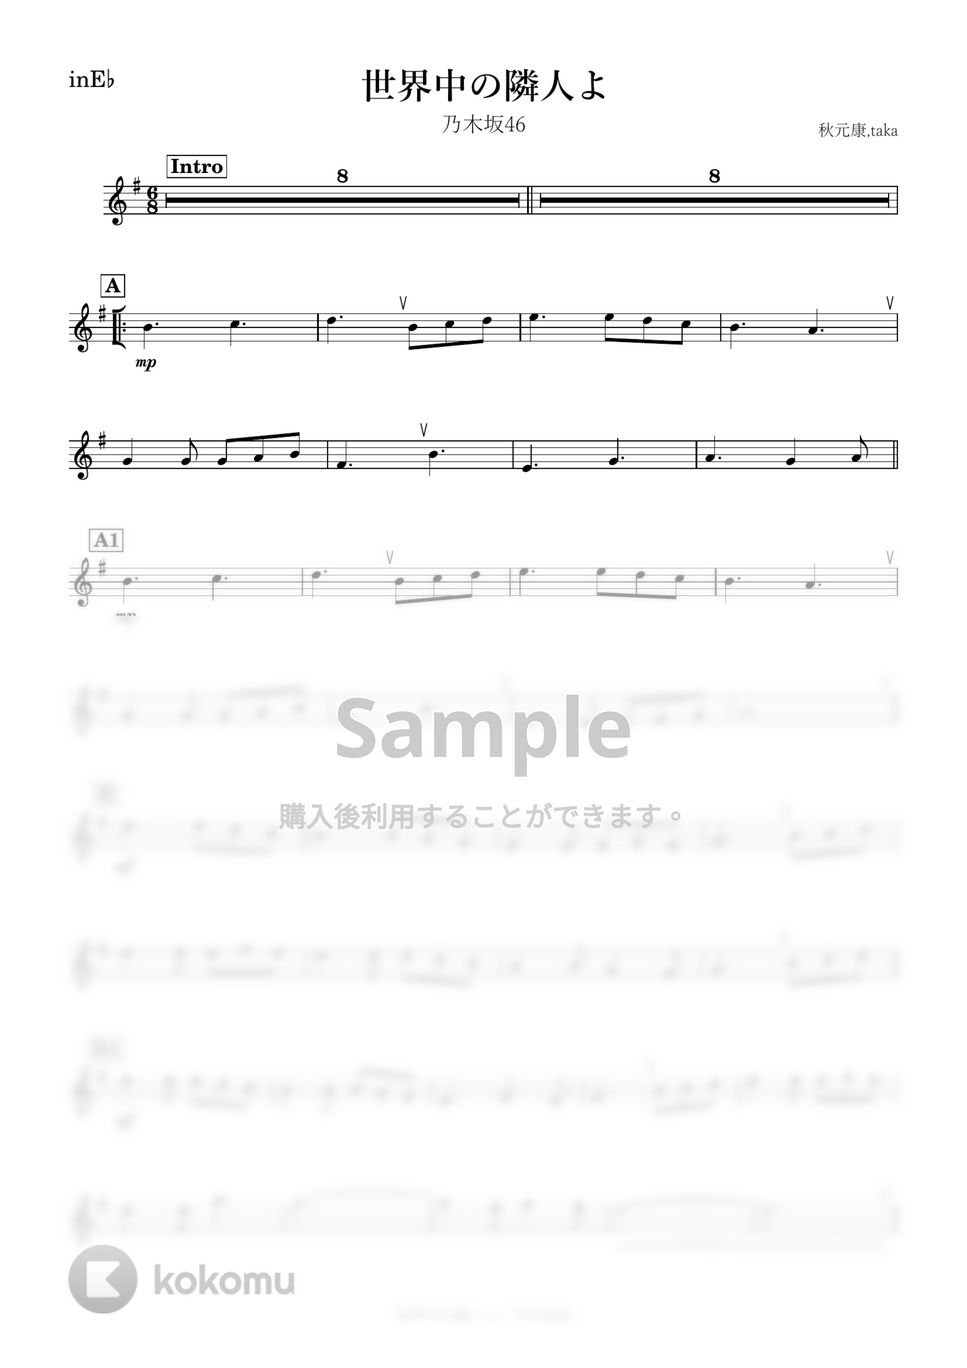 乃木坂46 - 世界中の隣人よ (E♭) by kanamusic